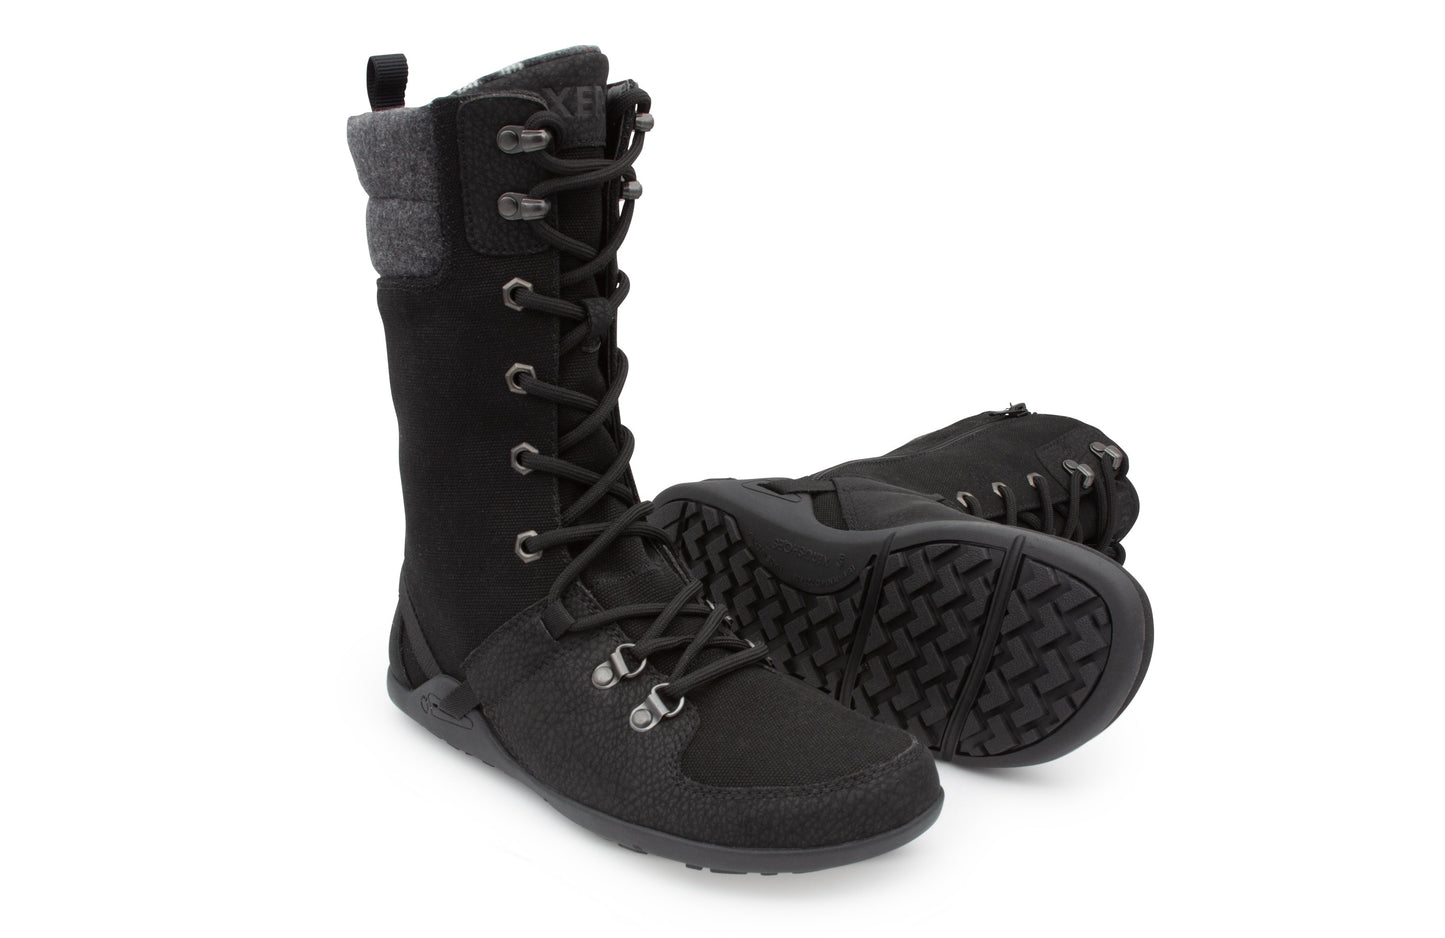 Xero Shoes Mika barfods vinterstøvler til kvinder i farven black, par